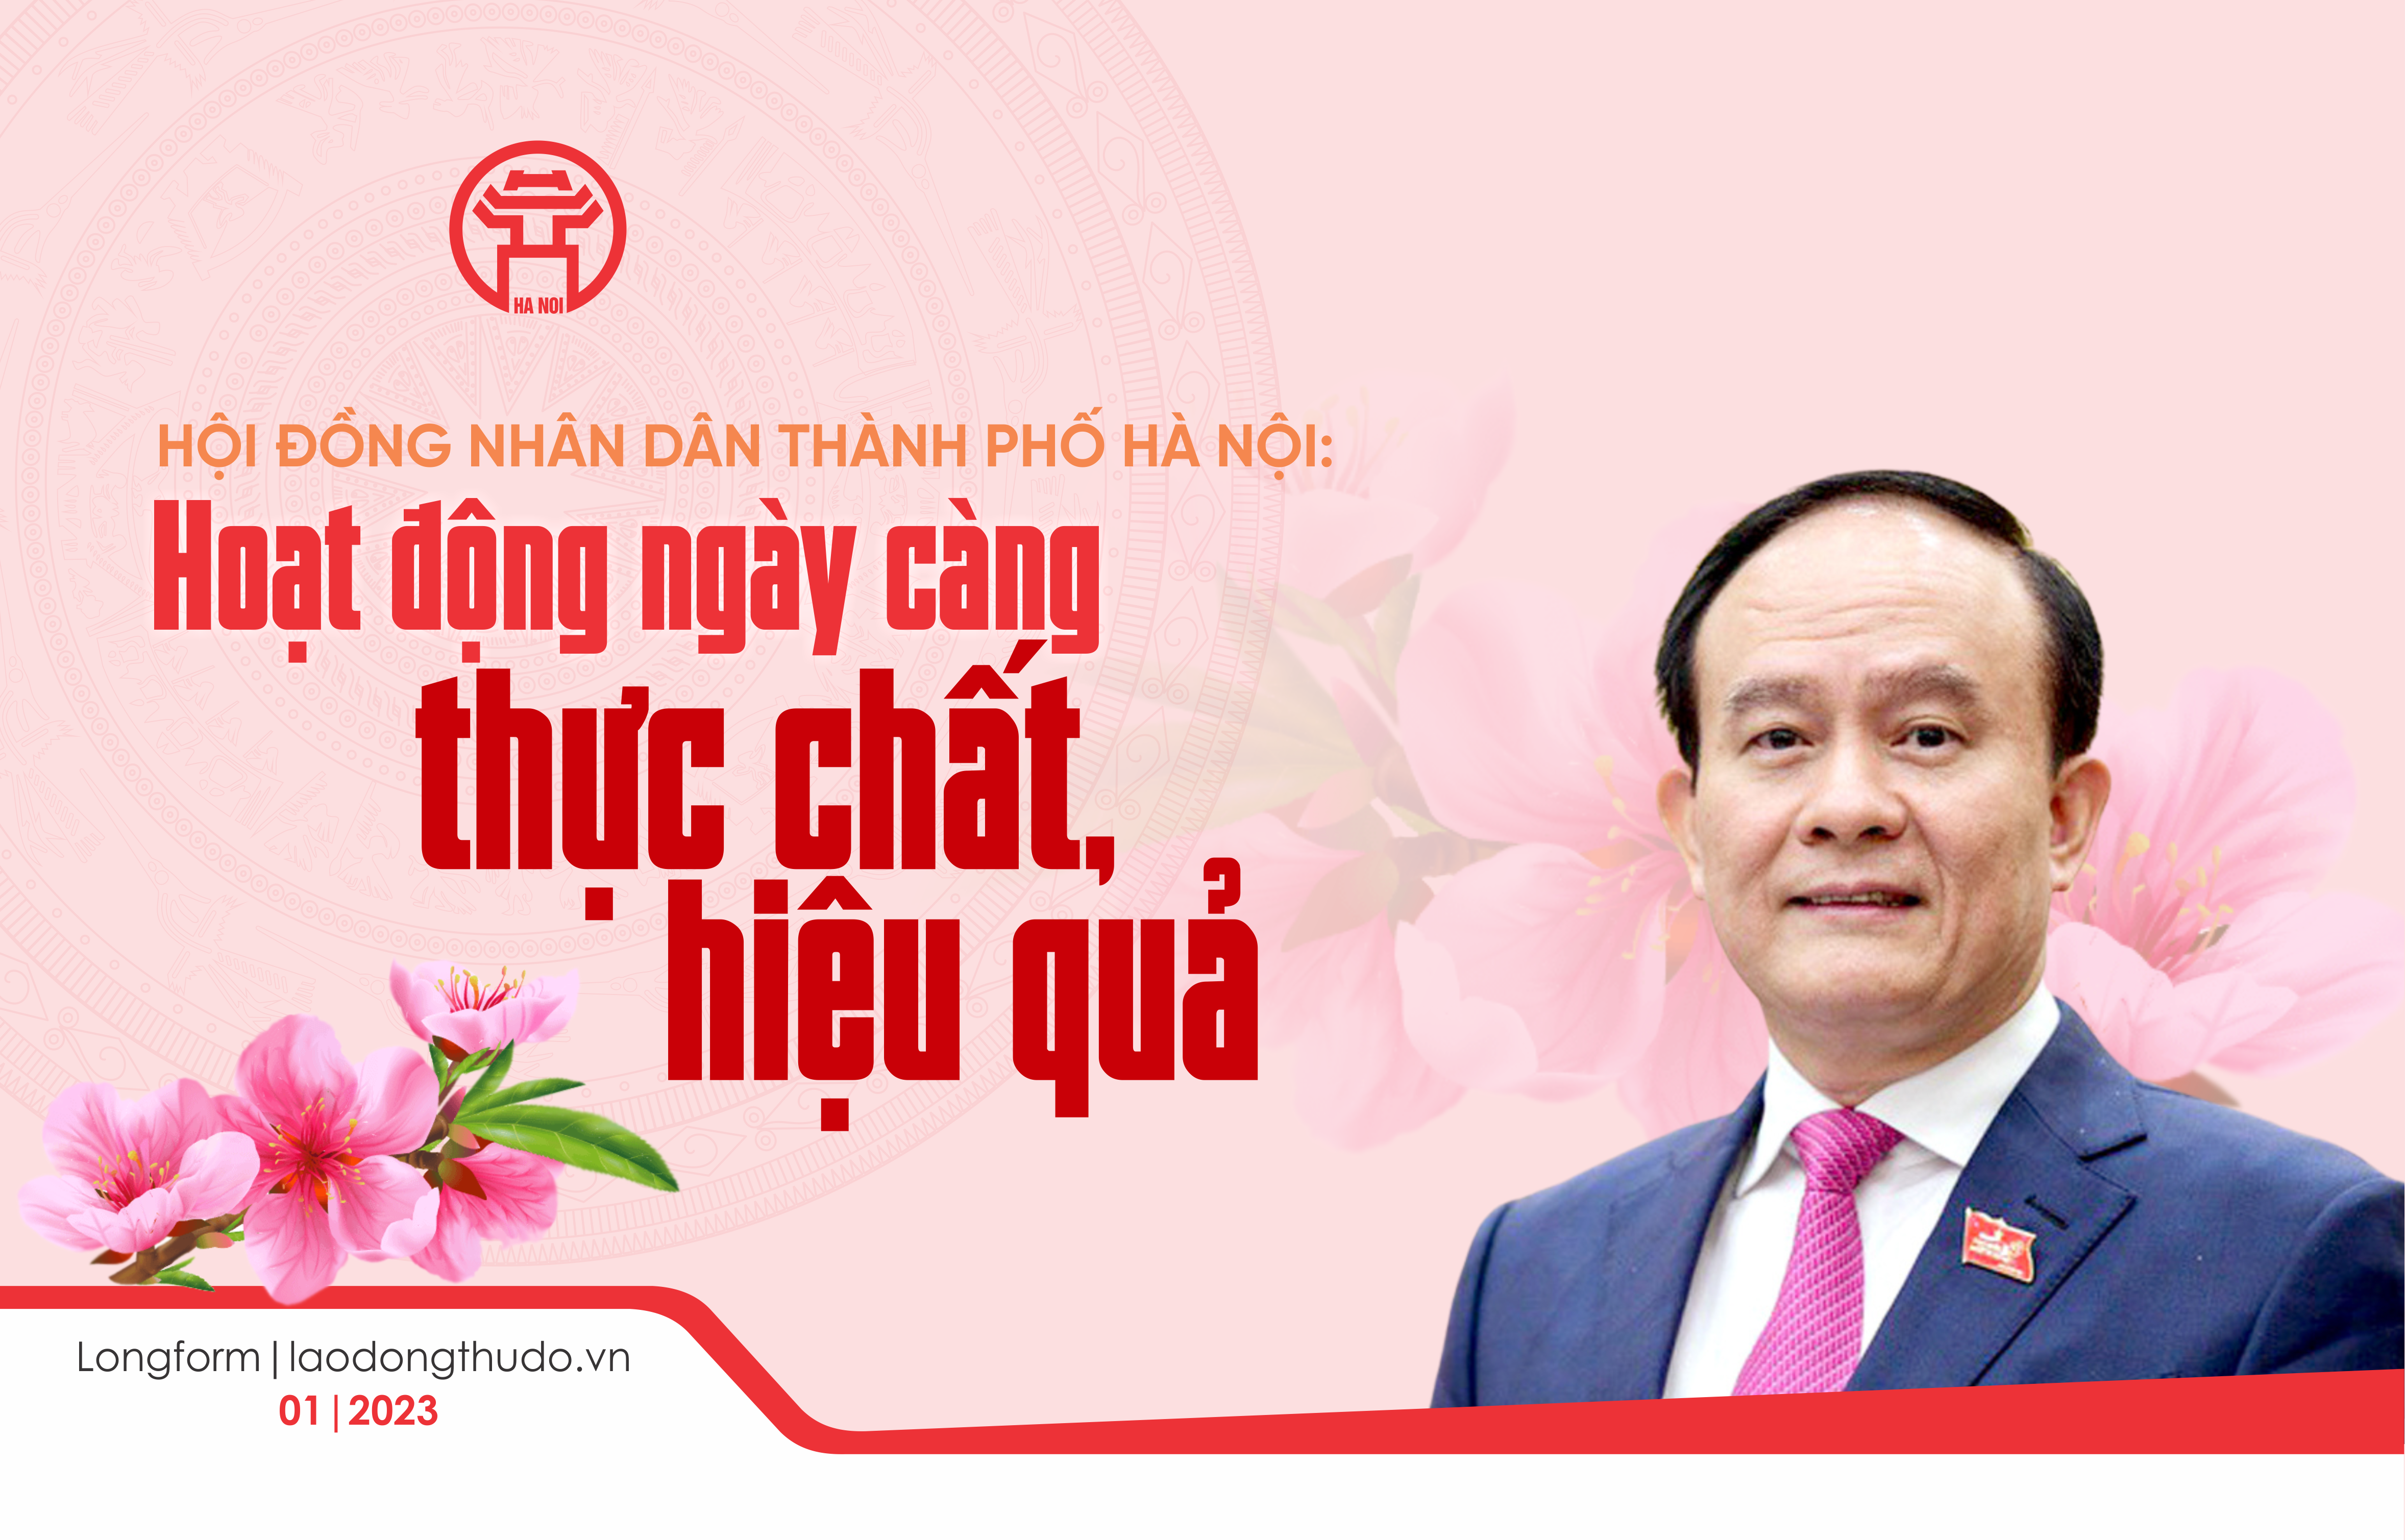 Hội đồng nhân dân thành phố Hà Nội: Hoạt động ngày càng thực chất, hiệu quả